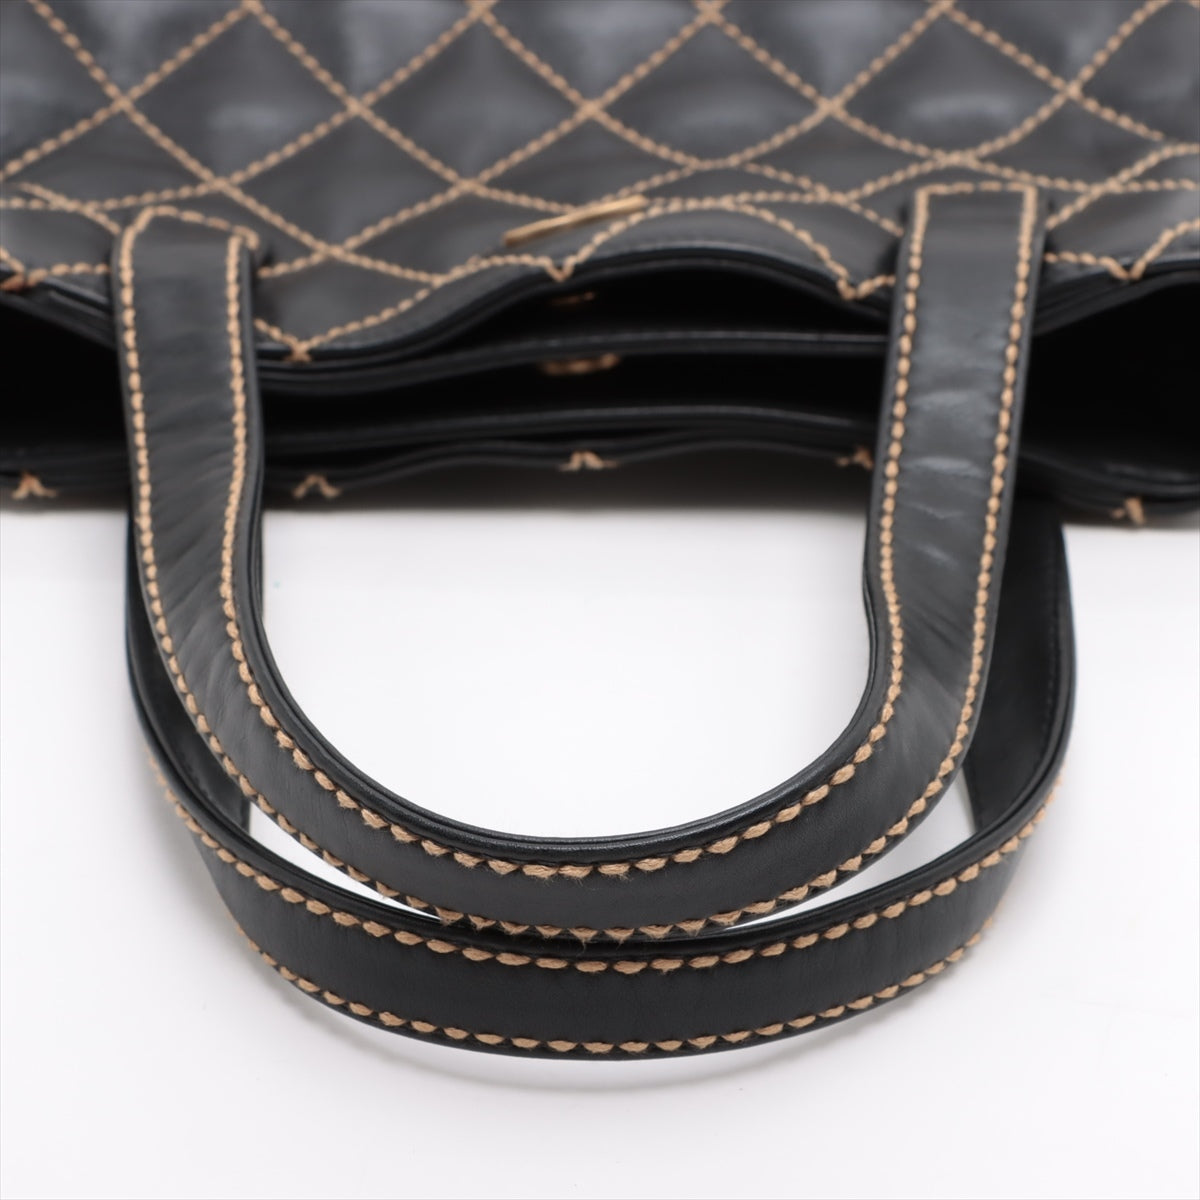 Chanel Wild Stitch Leather Hand bag Black matte gold hardware 7XXXXXX